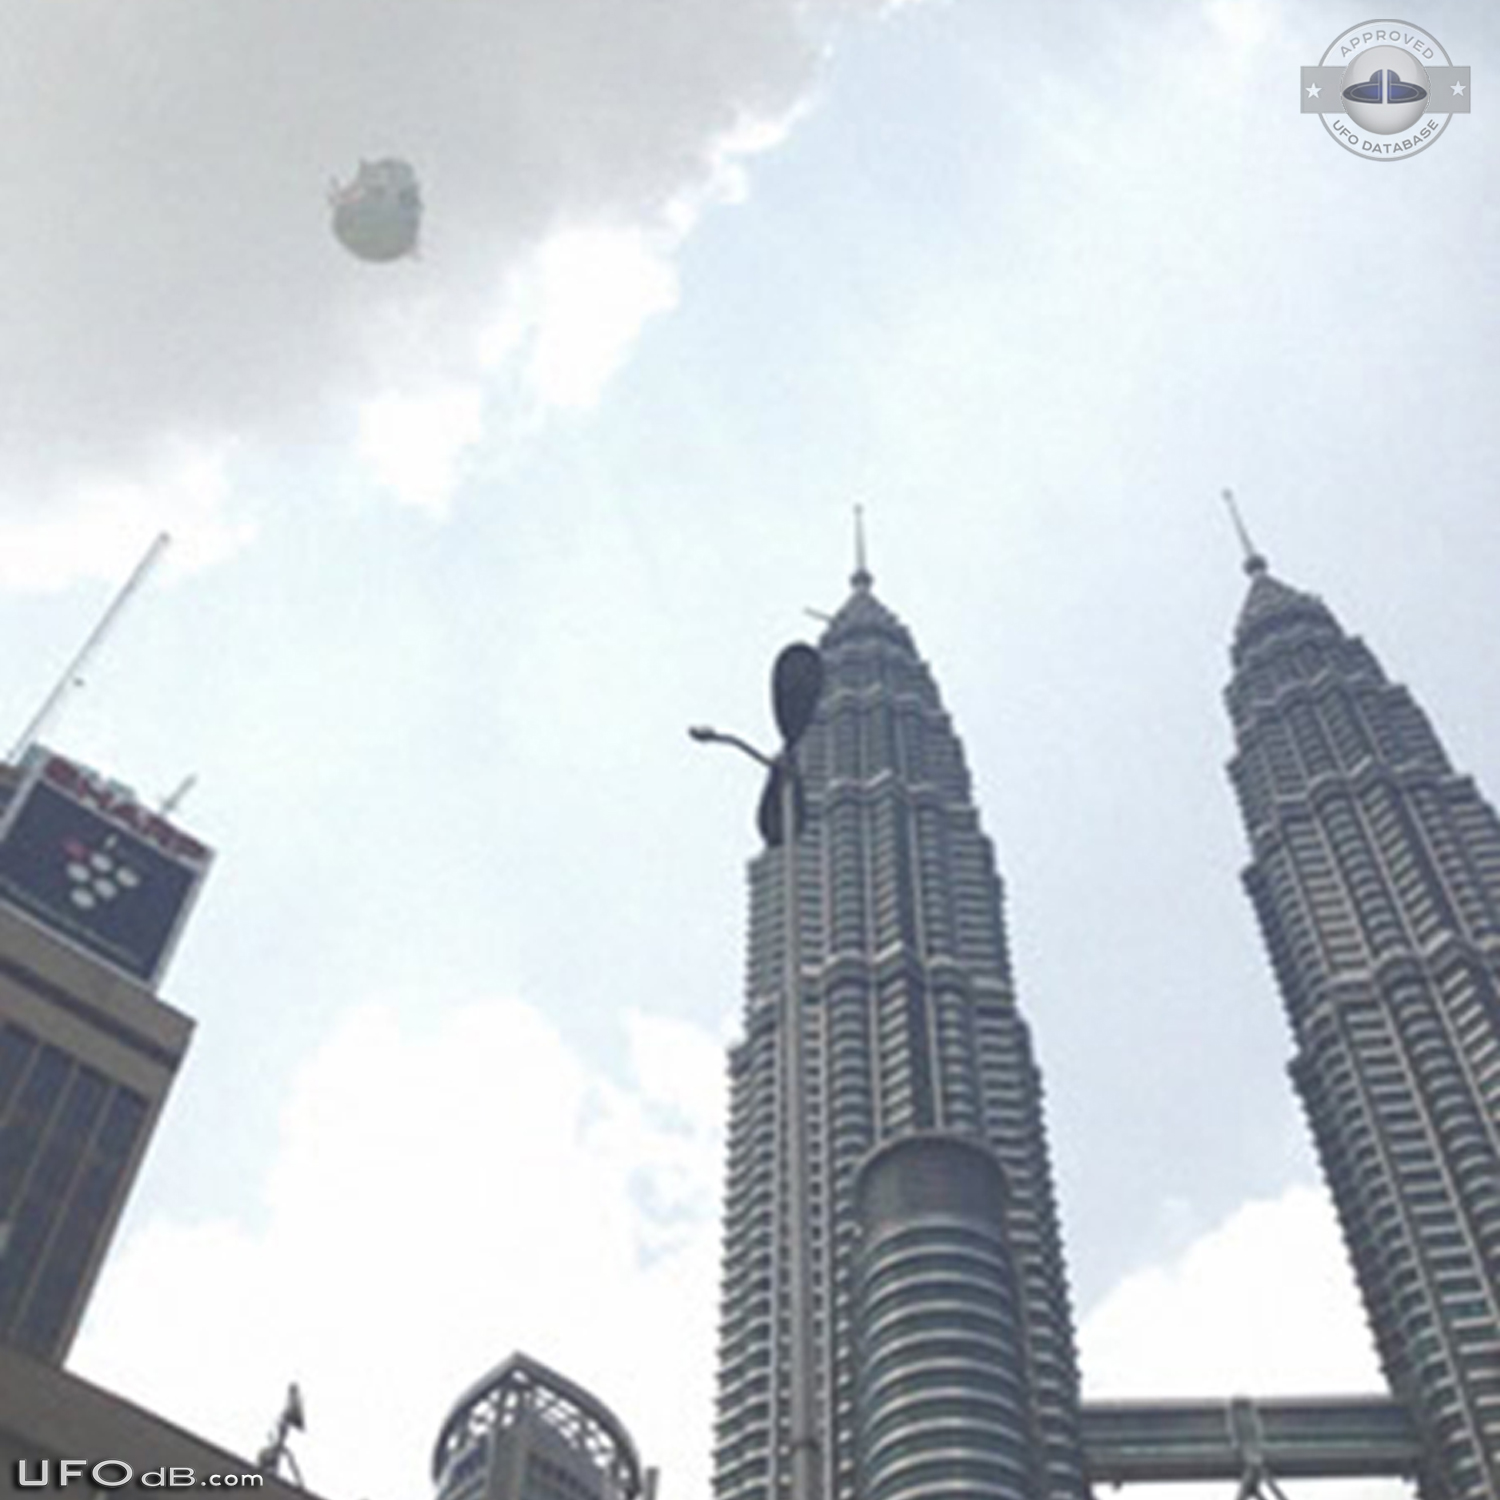 UFO near the Petronas Twin Towers in Kuala Lumpur, Malaysia - May 2014 UFO Picture #565-2